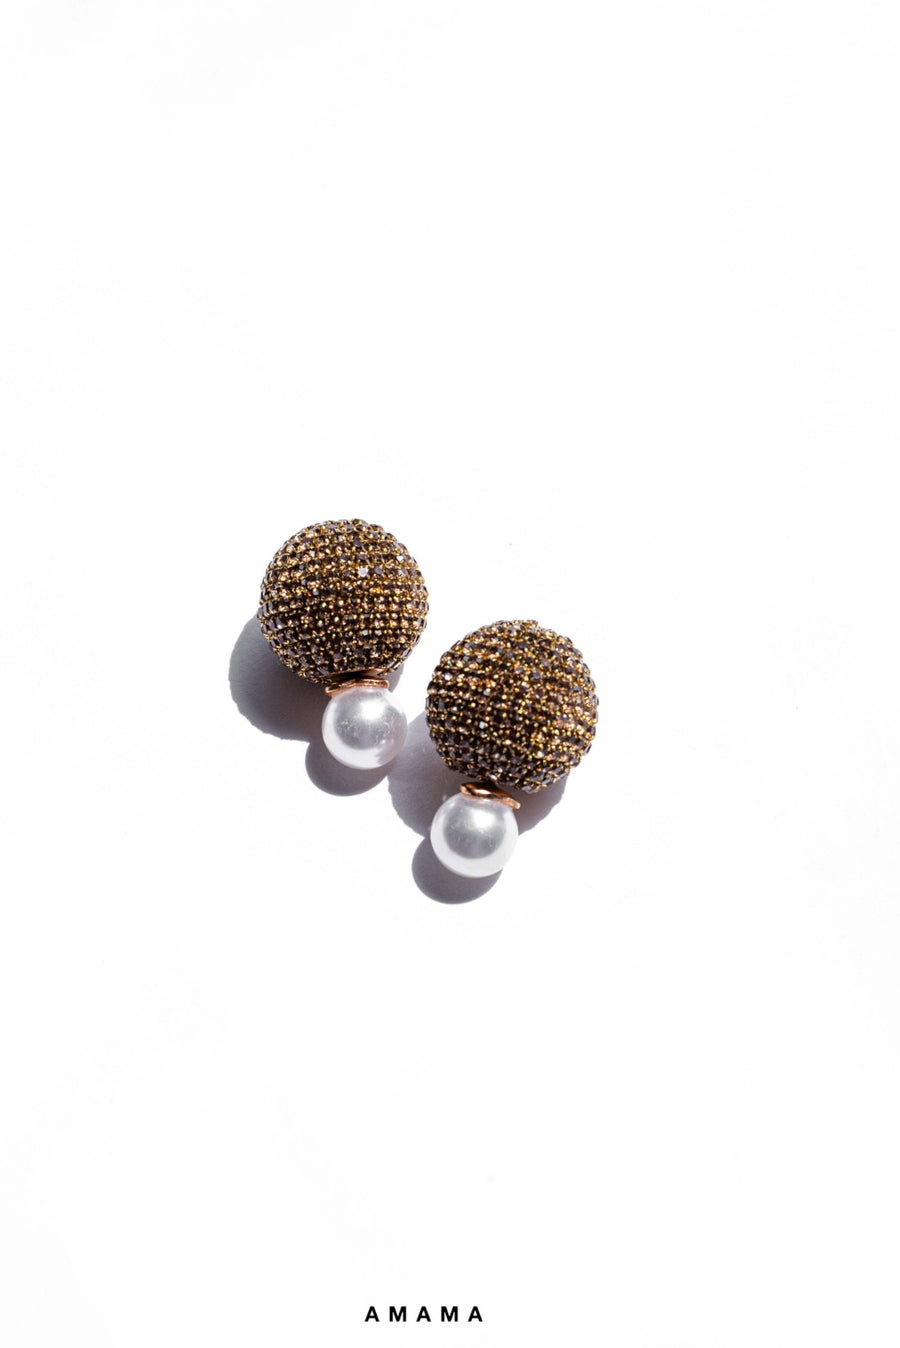 Nano Meteor Earrings in Champagne Gold